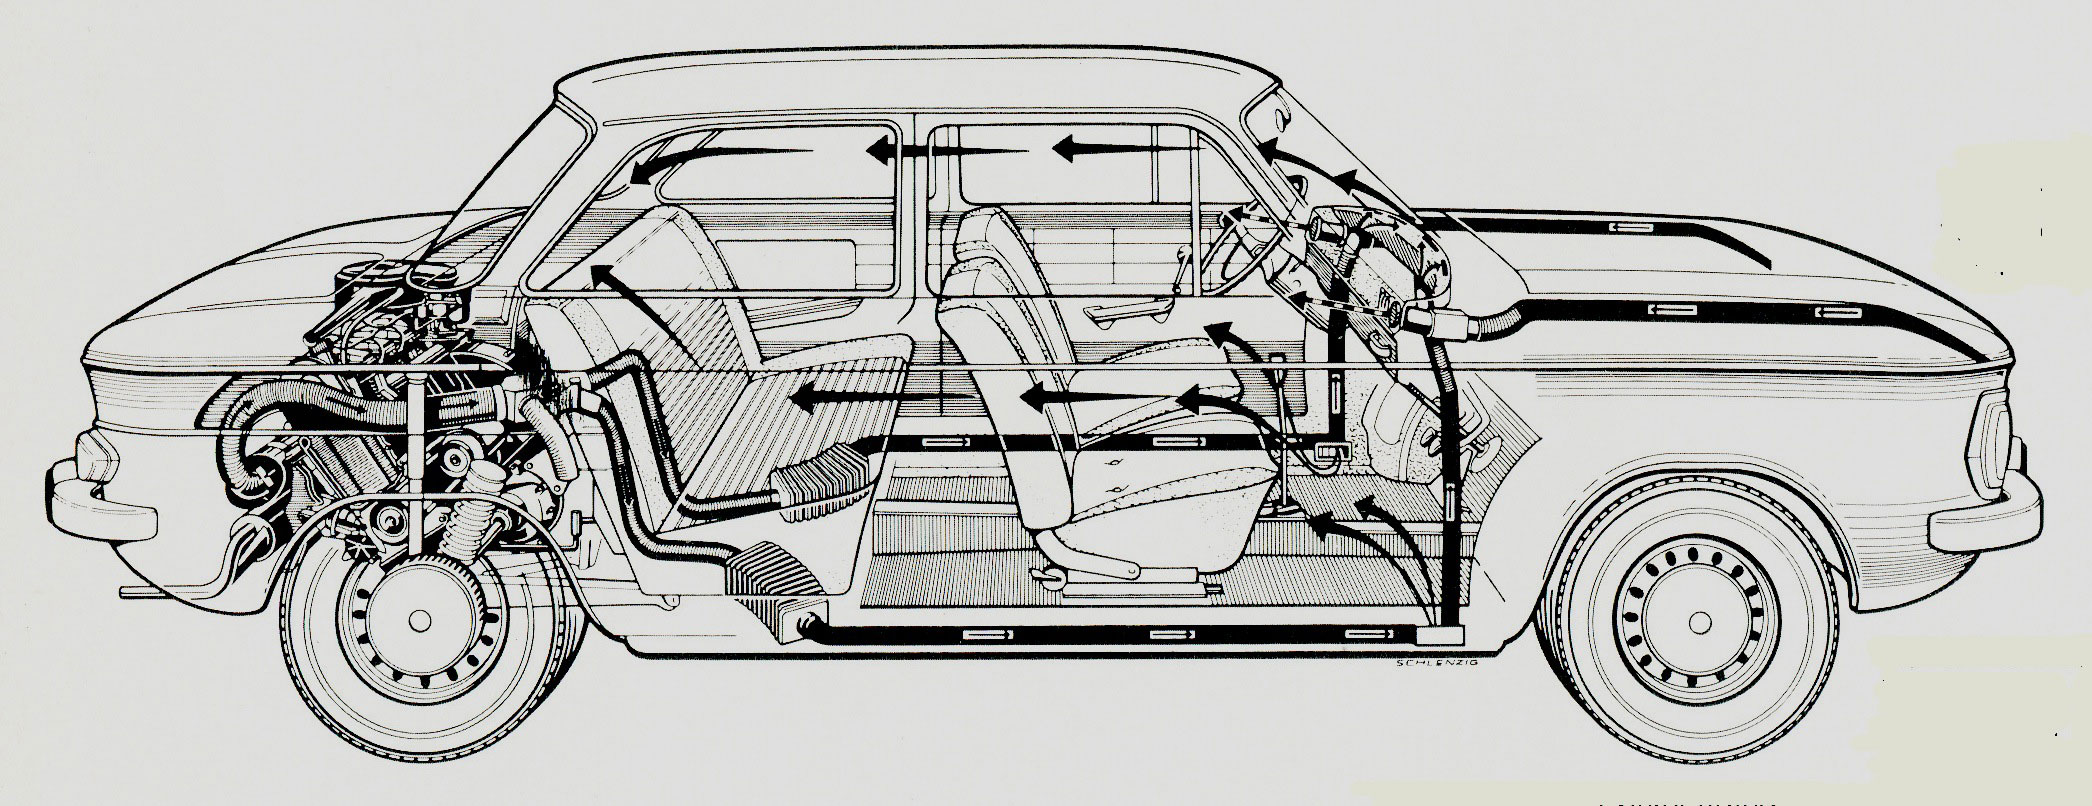 NSU 1200 cutaway drawing